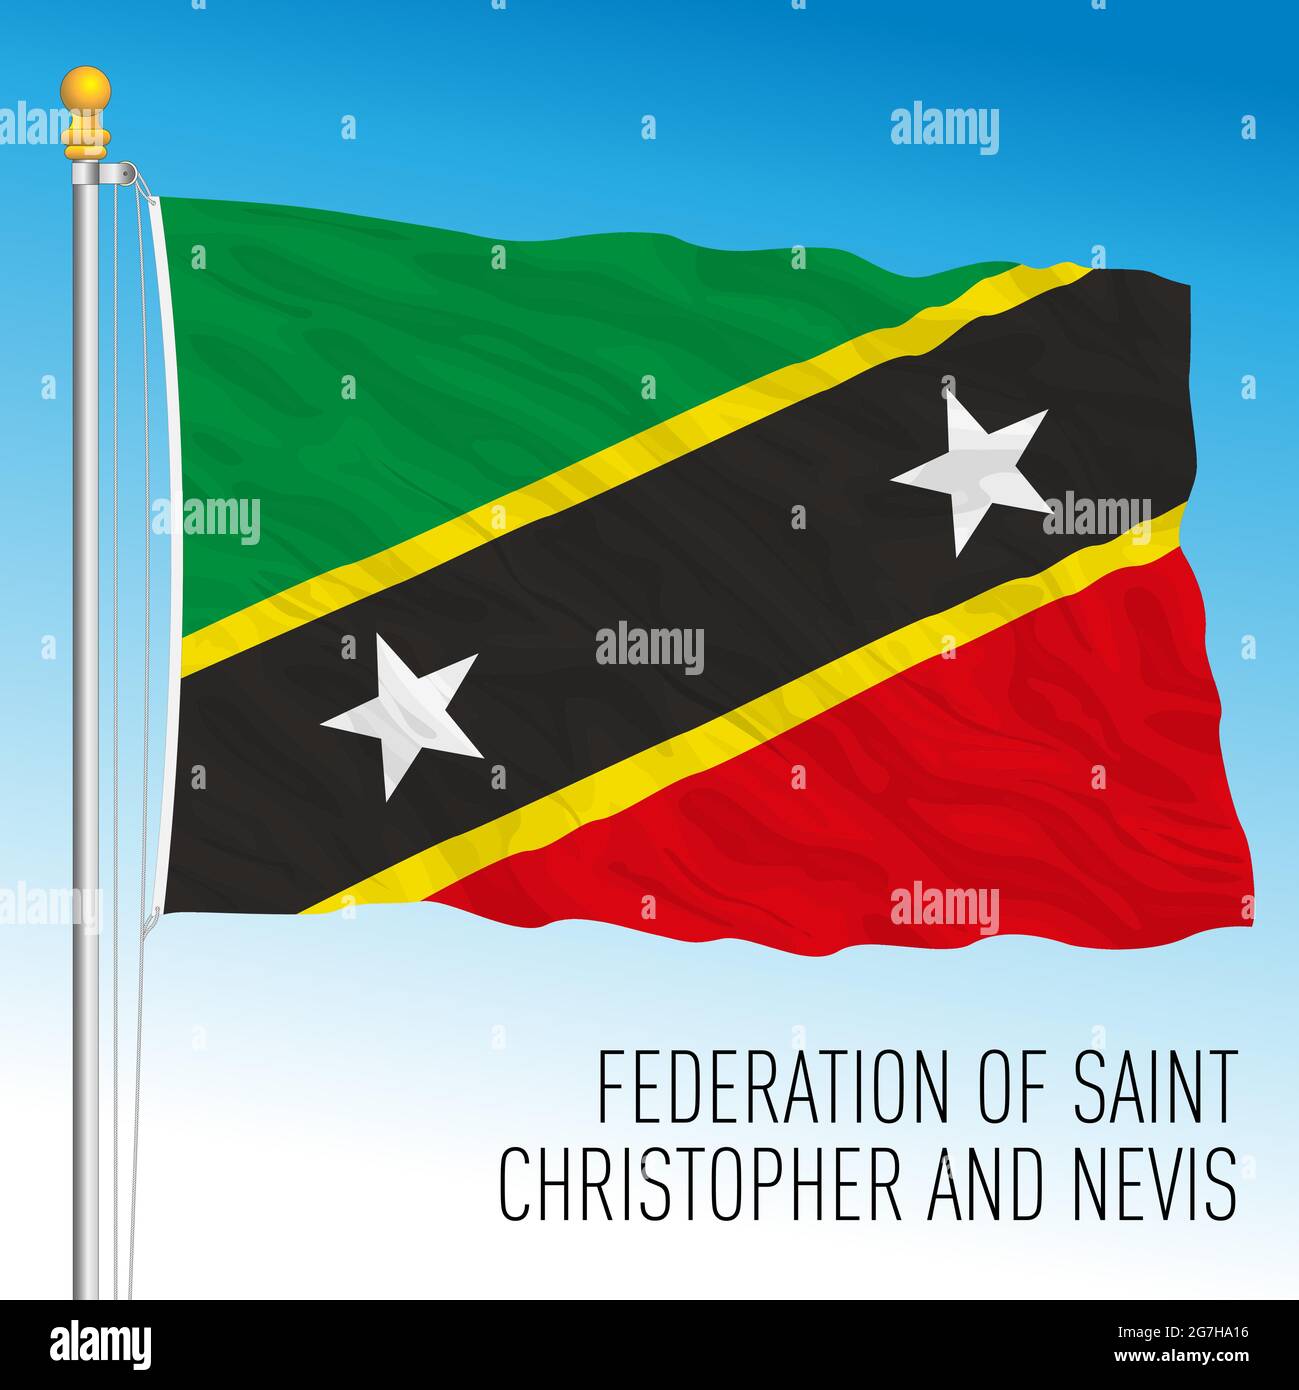 St. Christopher und Nevis, St. Kitts, offizielle Nationalflagge, karibik, Vektorgrafik Stock Vektor